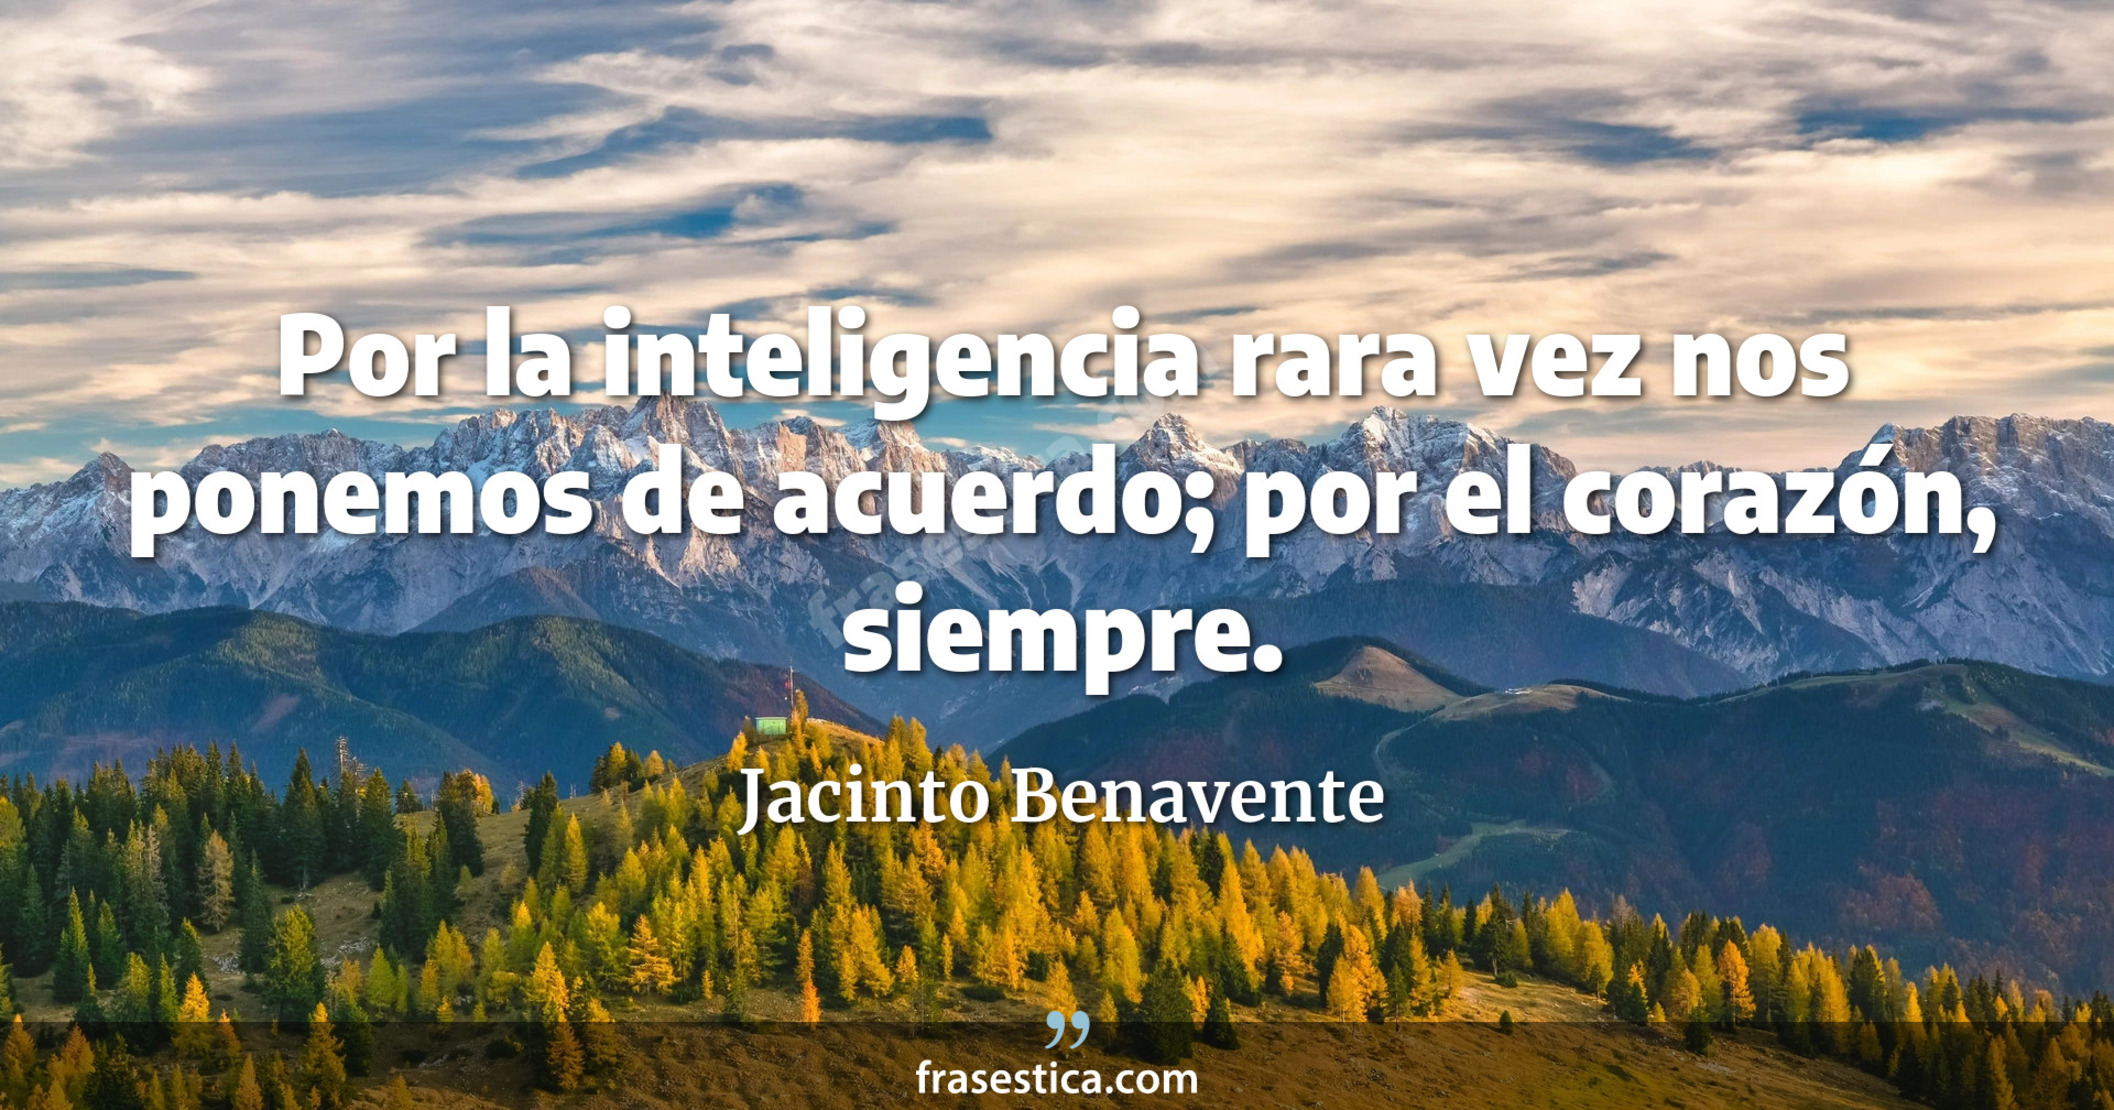 Por la inteligencia rara vez nos ponemos de acuerdo; por el corazón, siempre. - Jacinto Benavente